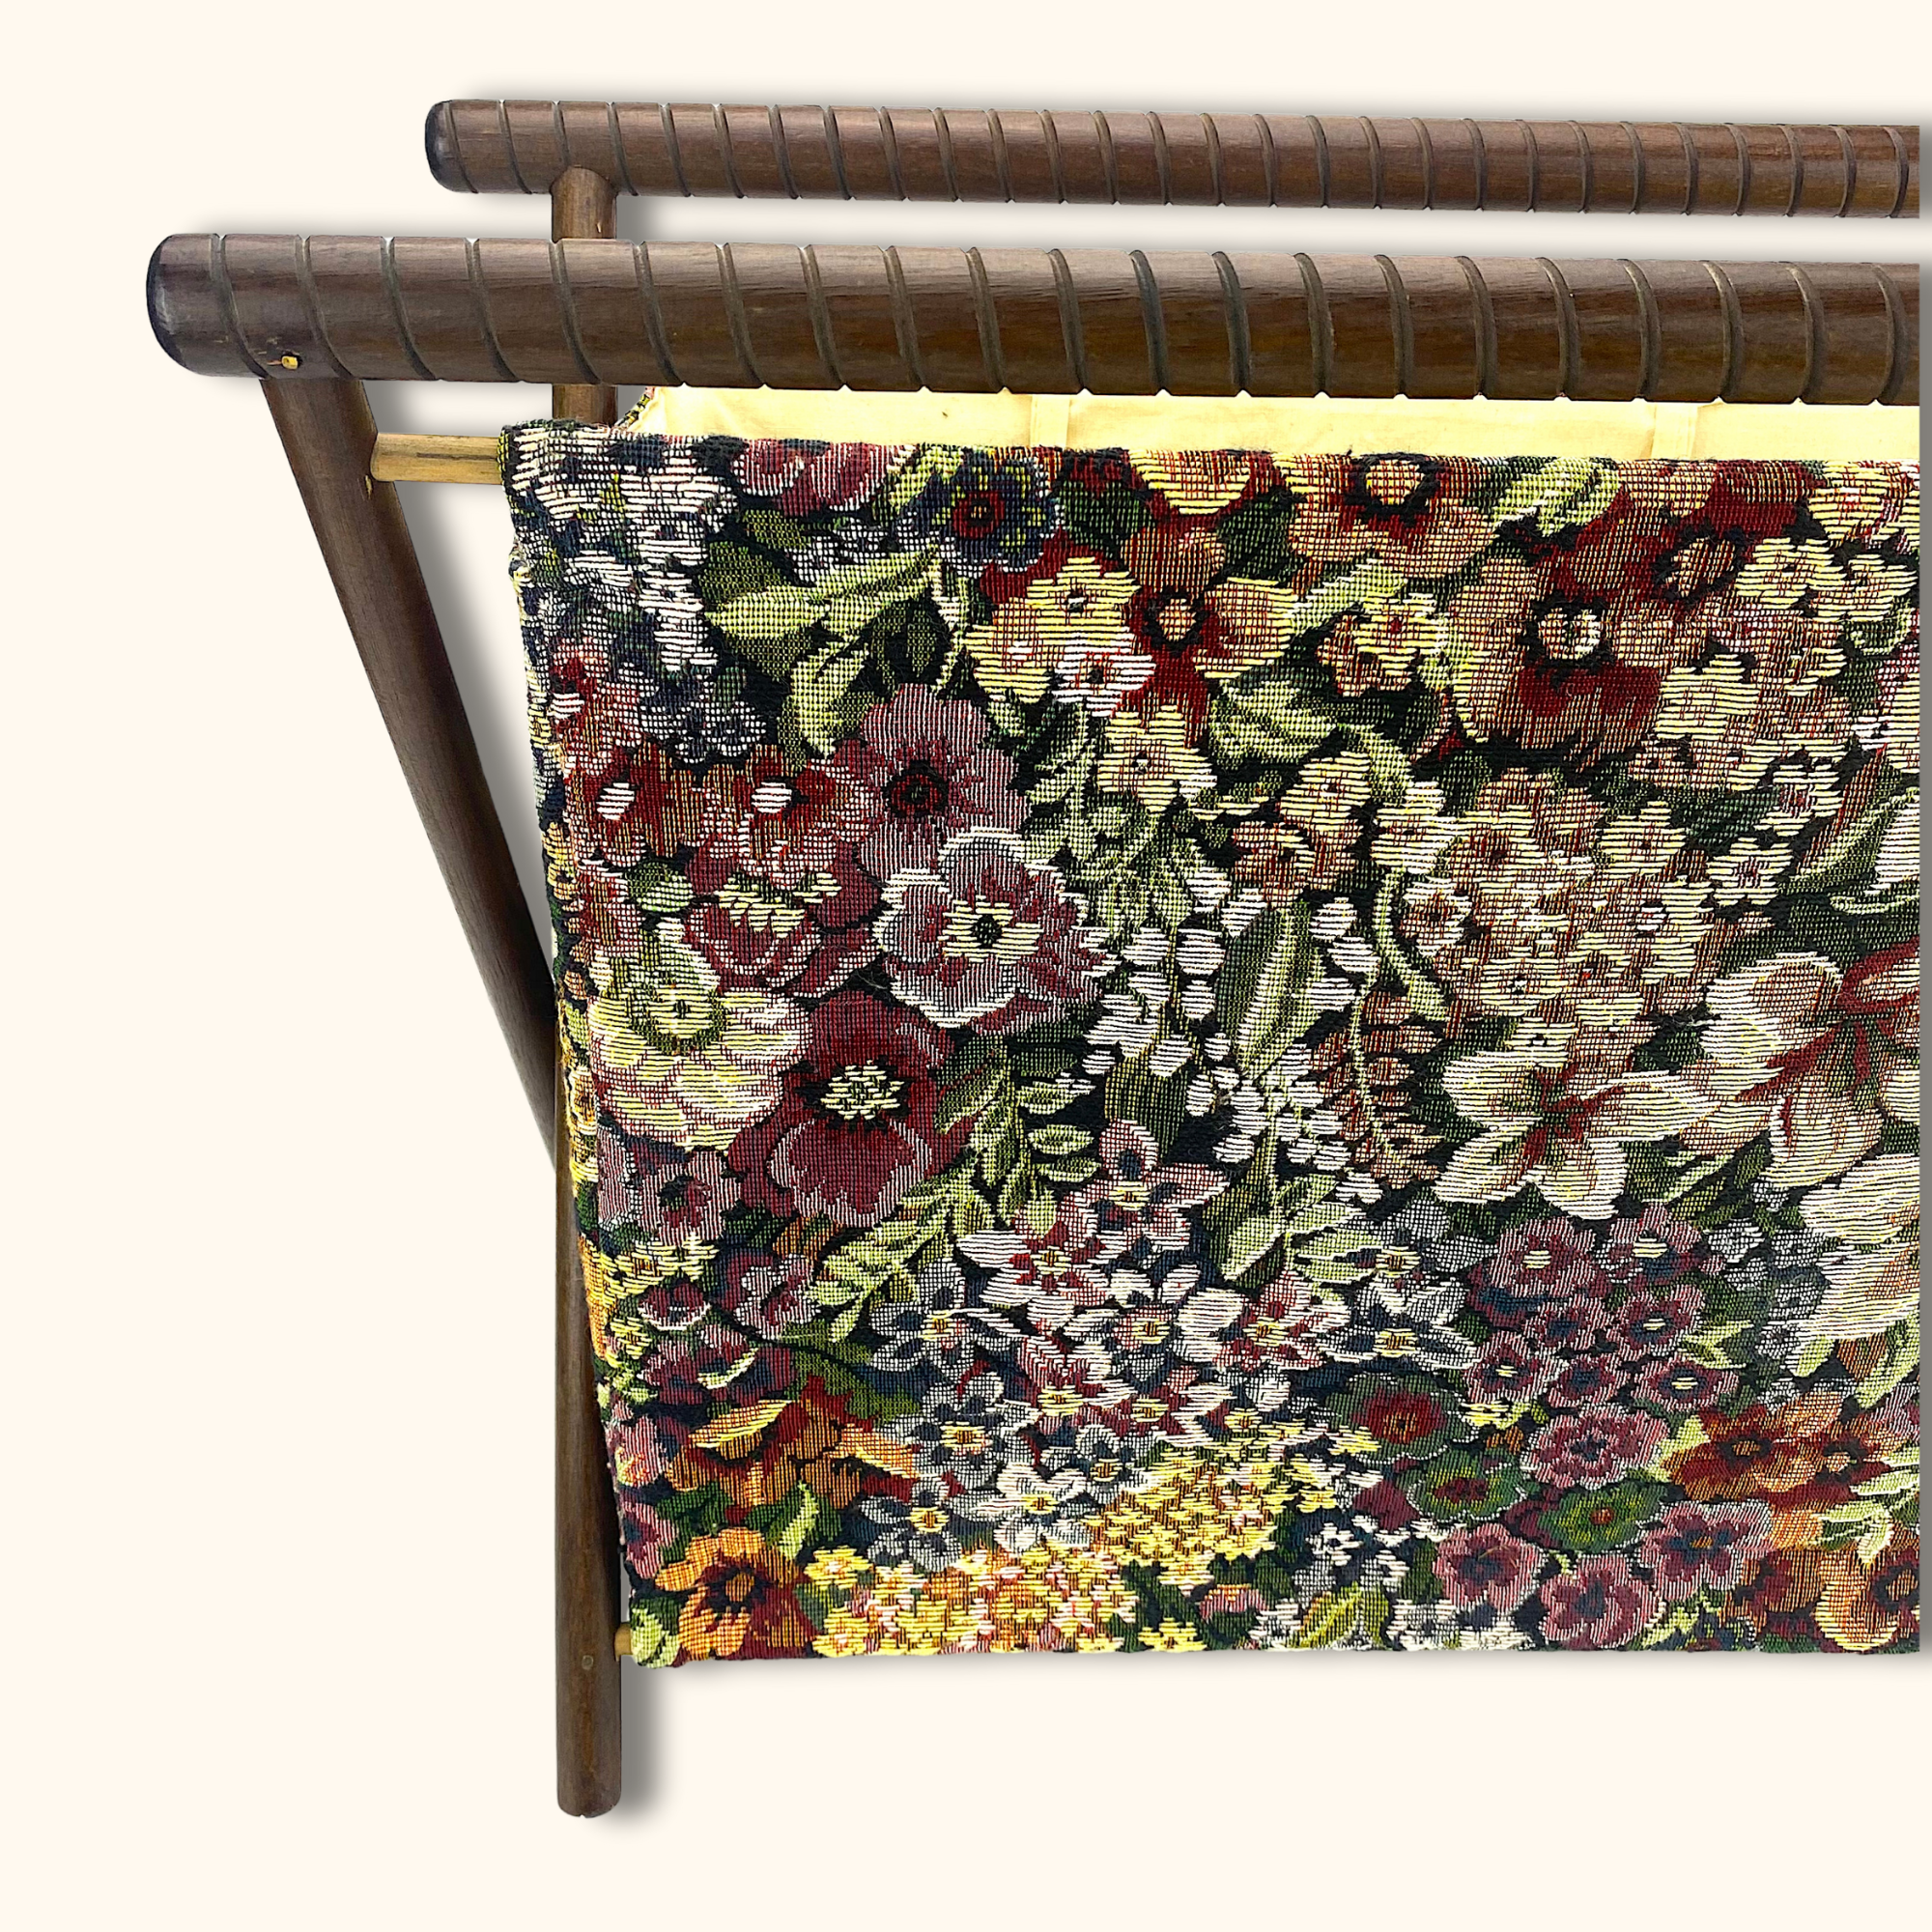 Vintage Floral Folding Knitting Basket - Sunshine Thrift - Decoration